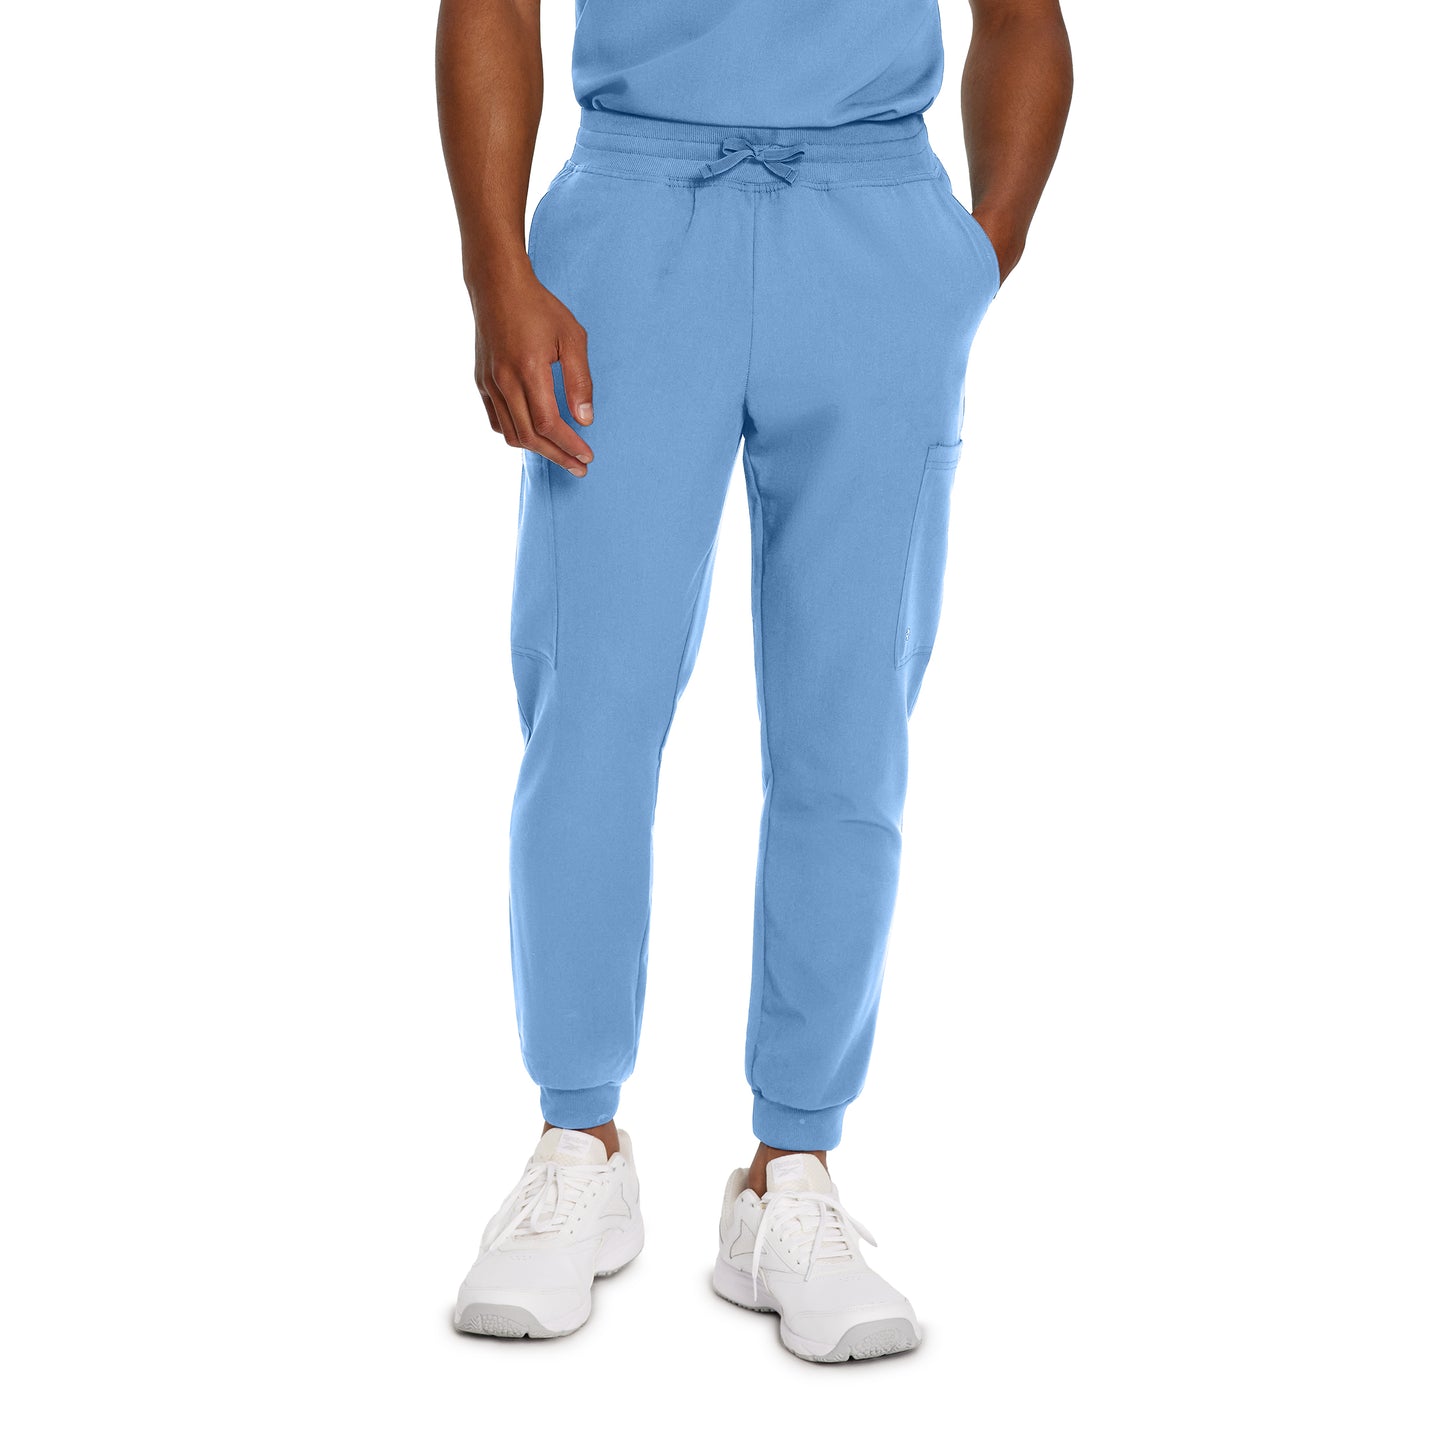 Pantalon de travail pour personel de la santé White Cross #222 bleu ciel